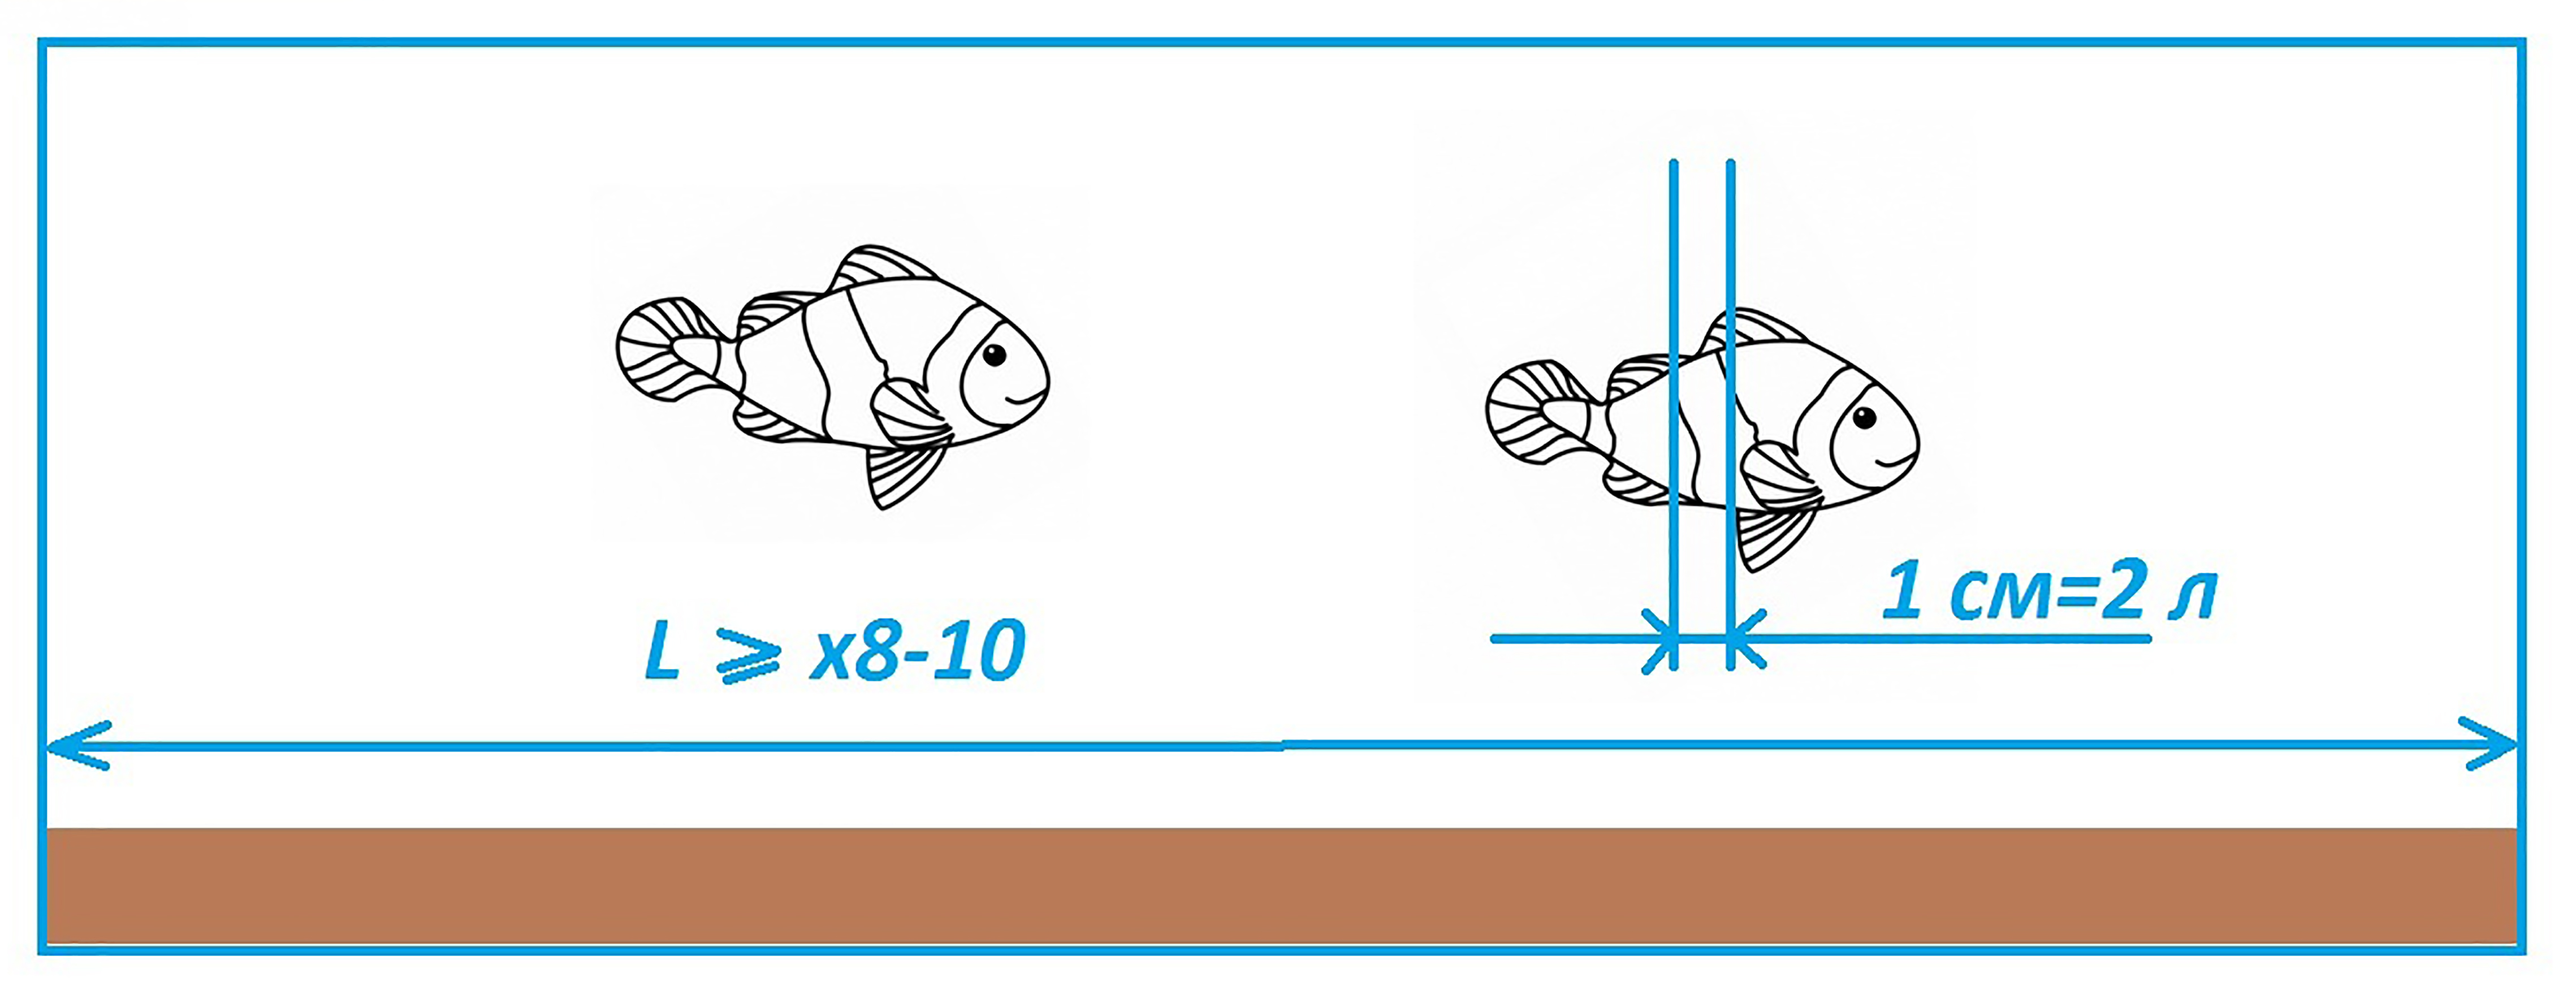 на 1 см длины тела рыбы должно приходиться 1,5 - 2 литра воды